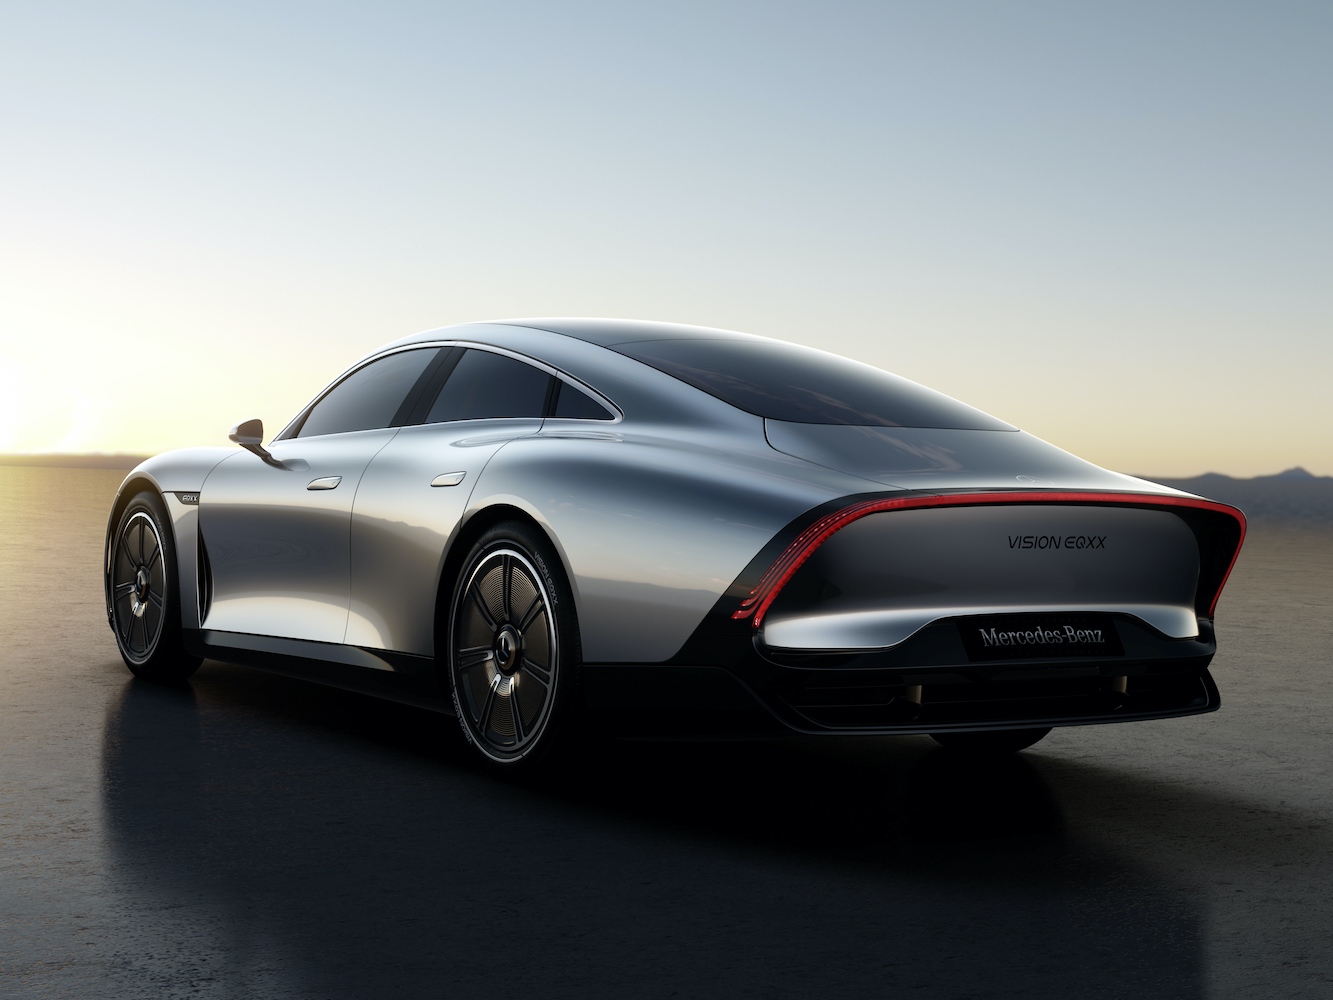 През изминалата година Mercedes показа концепта Vision EQXX който бе